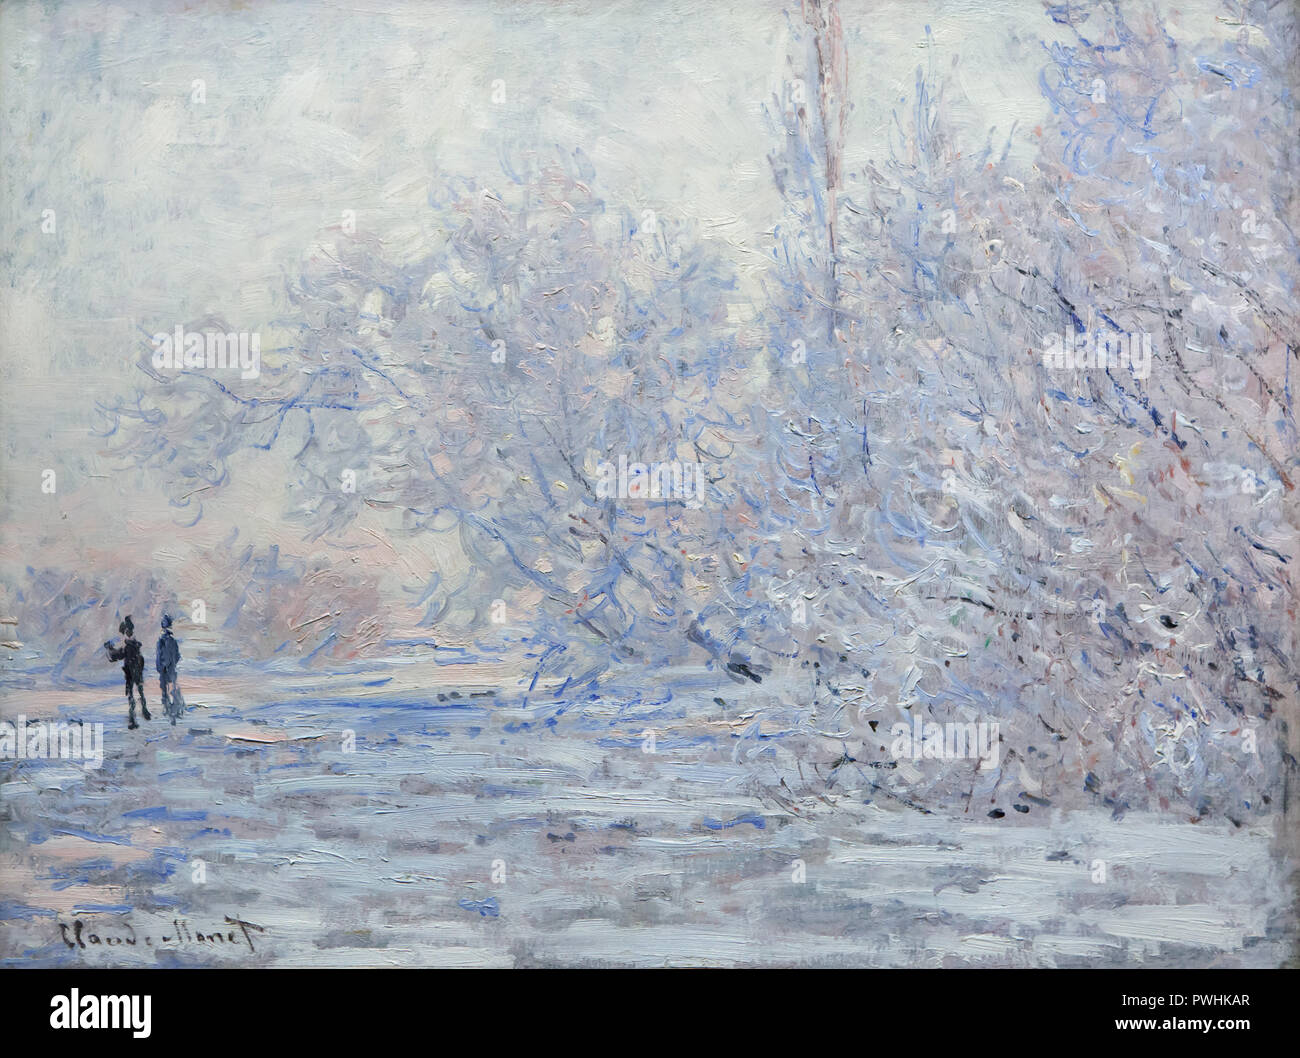 Peinture 'Frost à Giverny" (1889) de Claude Monet peintre impressionniste français sur l'affichage à son exposition rétrospective à l'Albertina Museum de Vienne, en Autriche. L'exposition consacrée au fondateur de la peinture impressionniste français s'exécute jusqu'à 6 janvier 2019. Banque D'Images